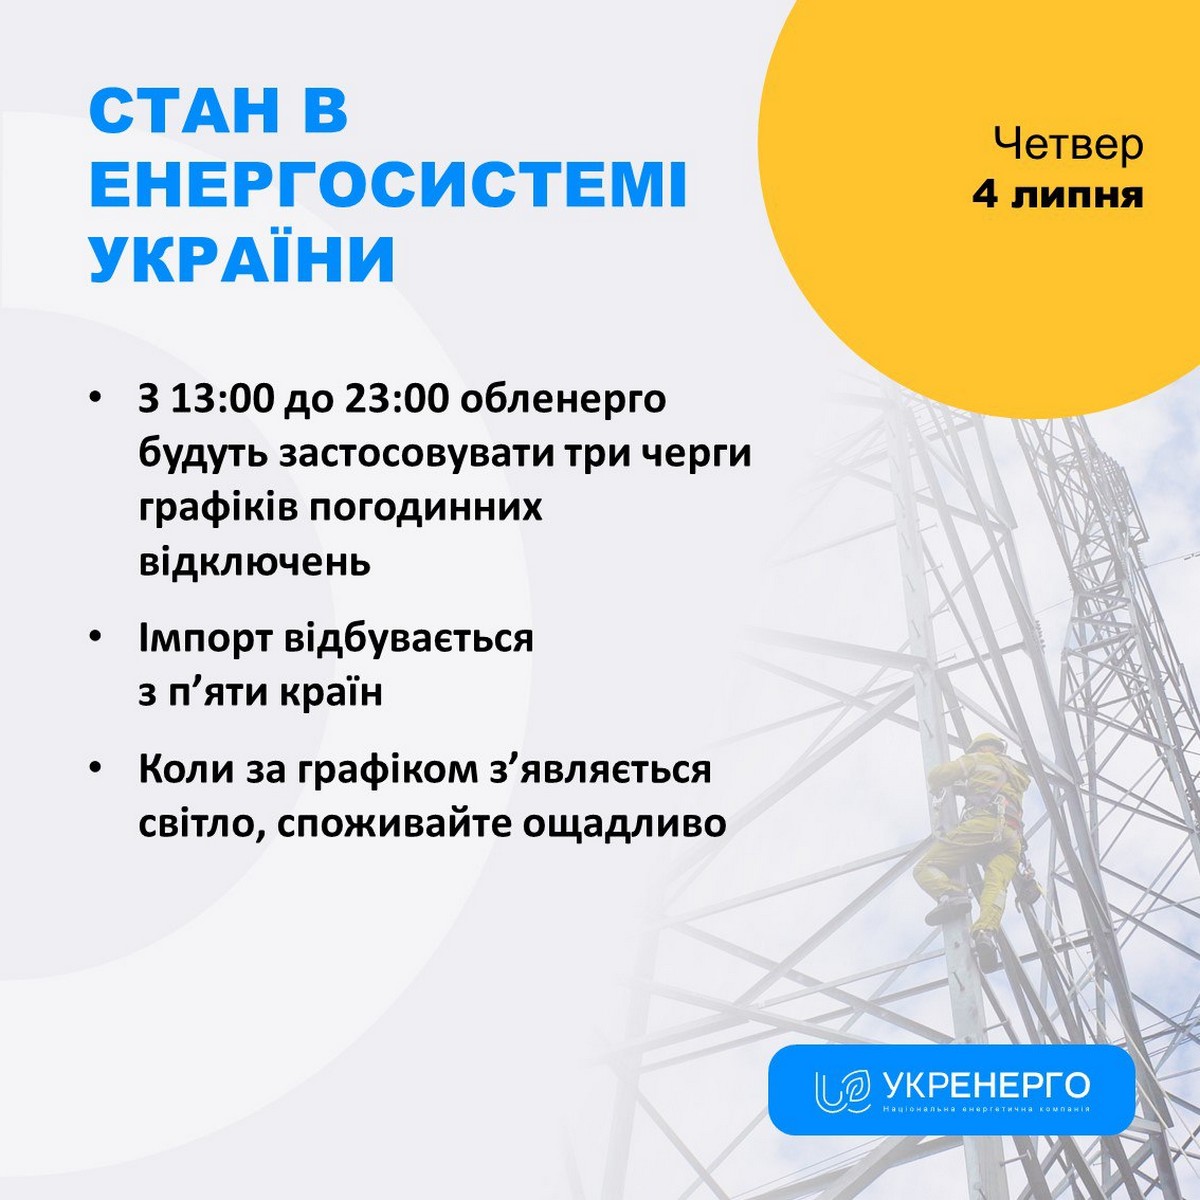 Яка ситуація в енергосистемі України 4 липня